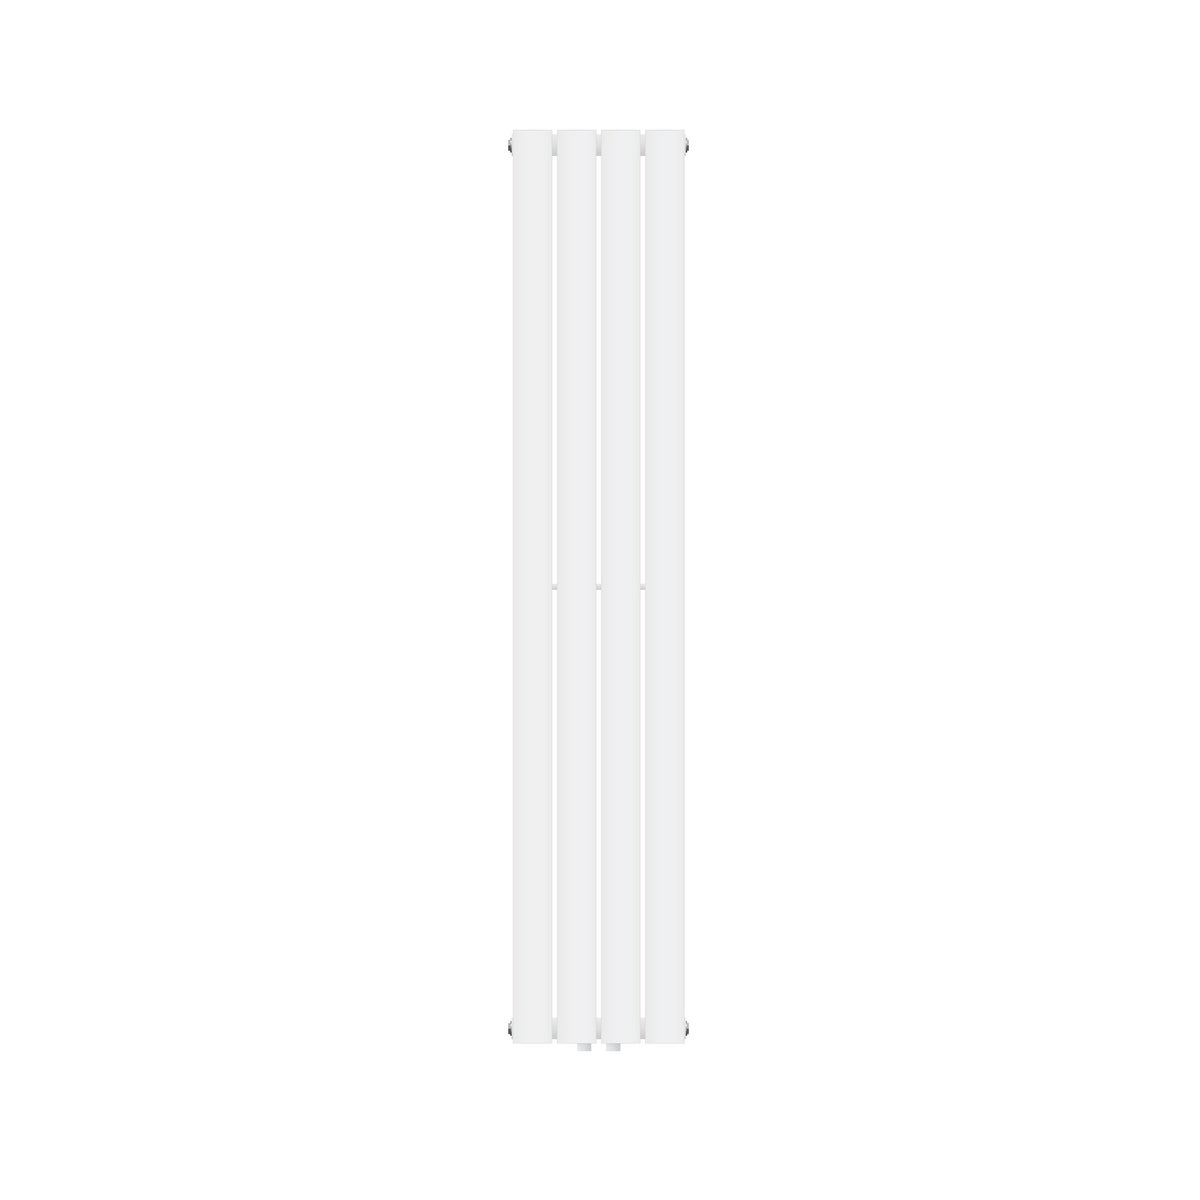 LuxeBath Paneelheizkörper Doppellagig 1600x300 mm Weiß, Design Badheizkörper Mittelanschluss, Bad/Wohnraum Heizung, Designheizkörper Flach Heizkörper, Flachheizkörper Vertikal Röhren, mit Montage-Set